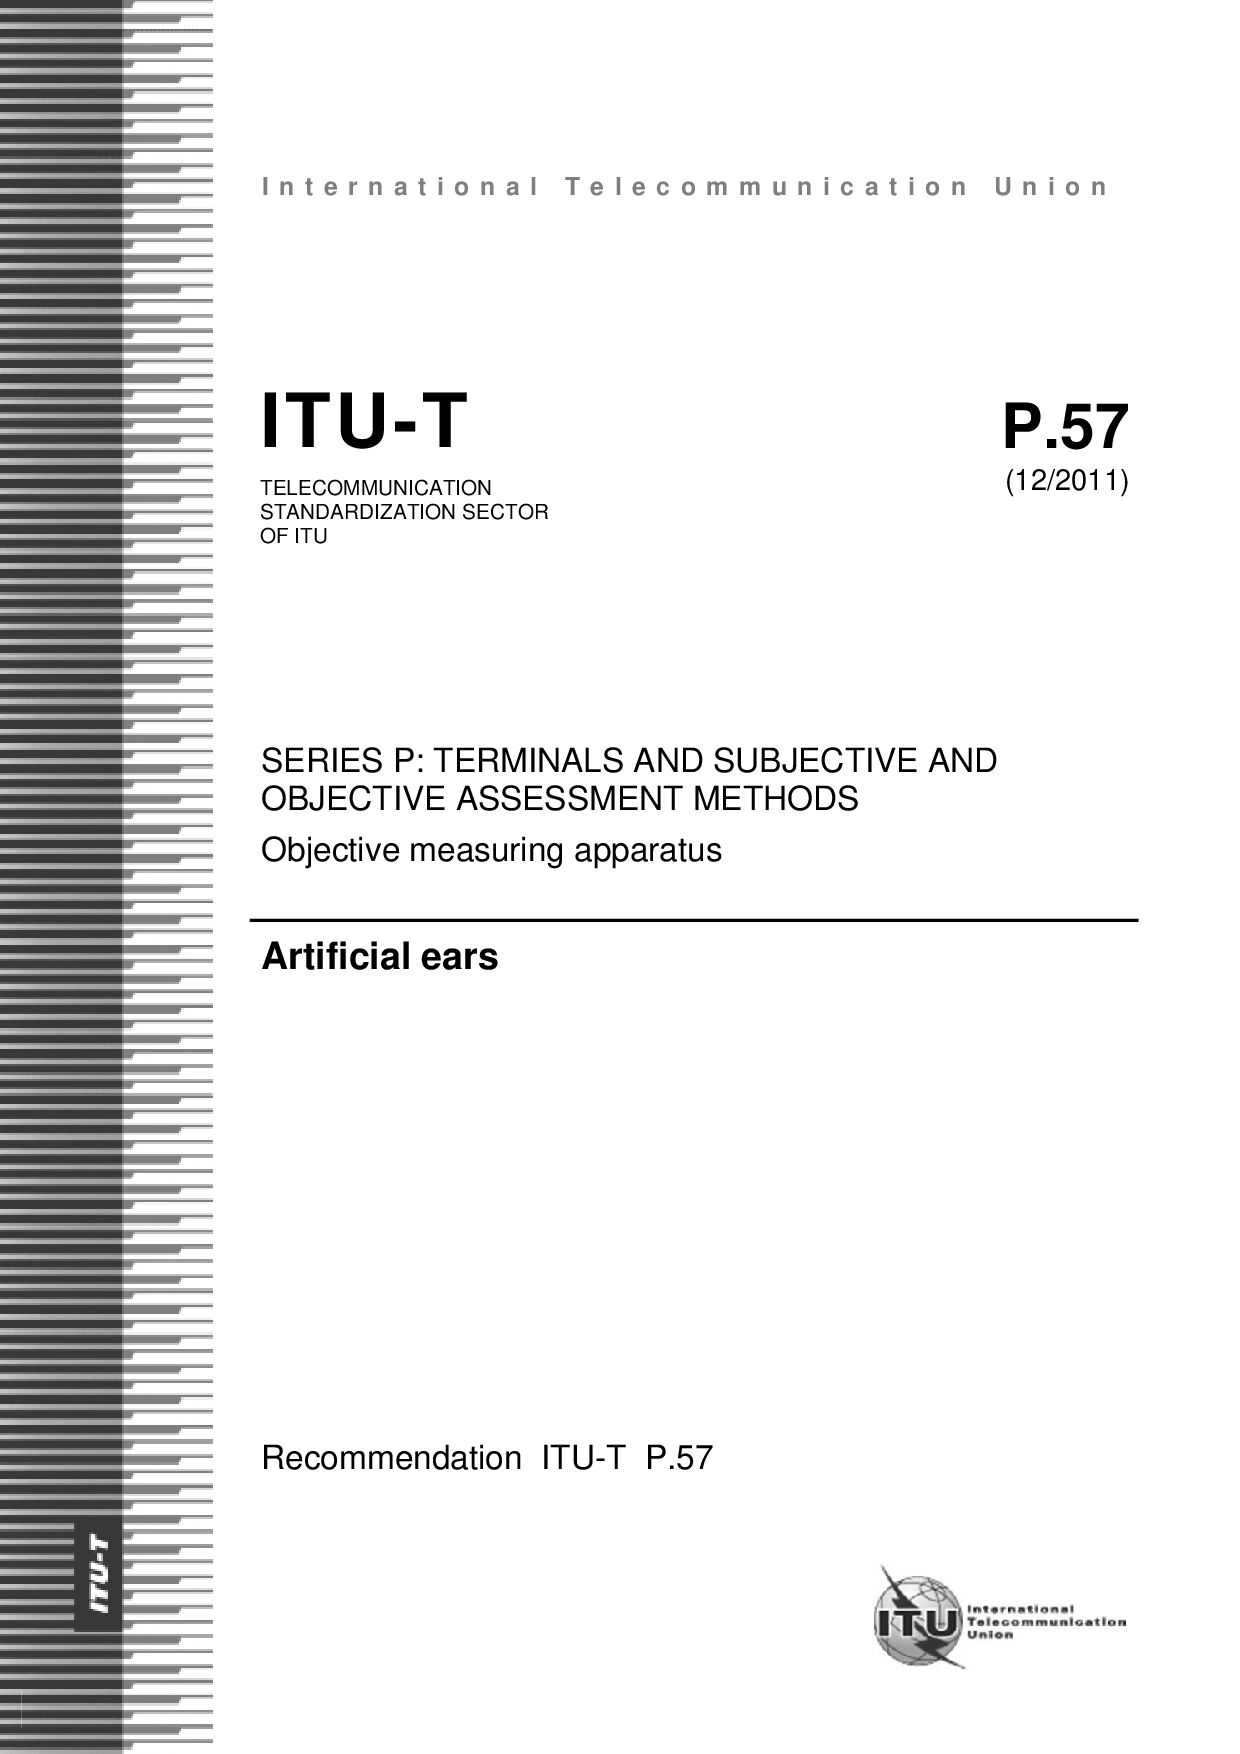 ITU-T P.57-2011